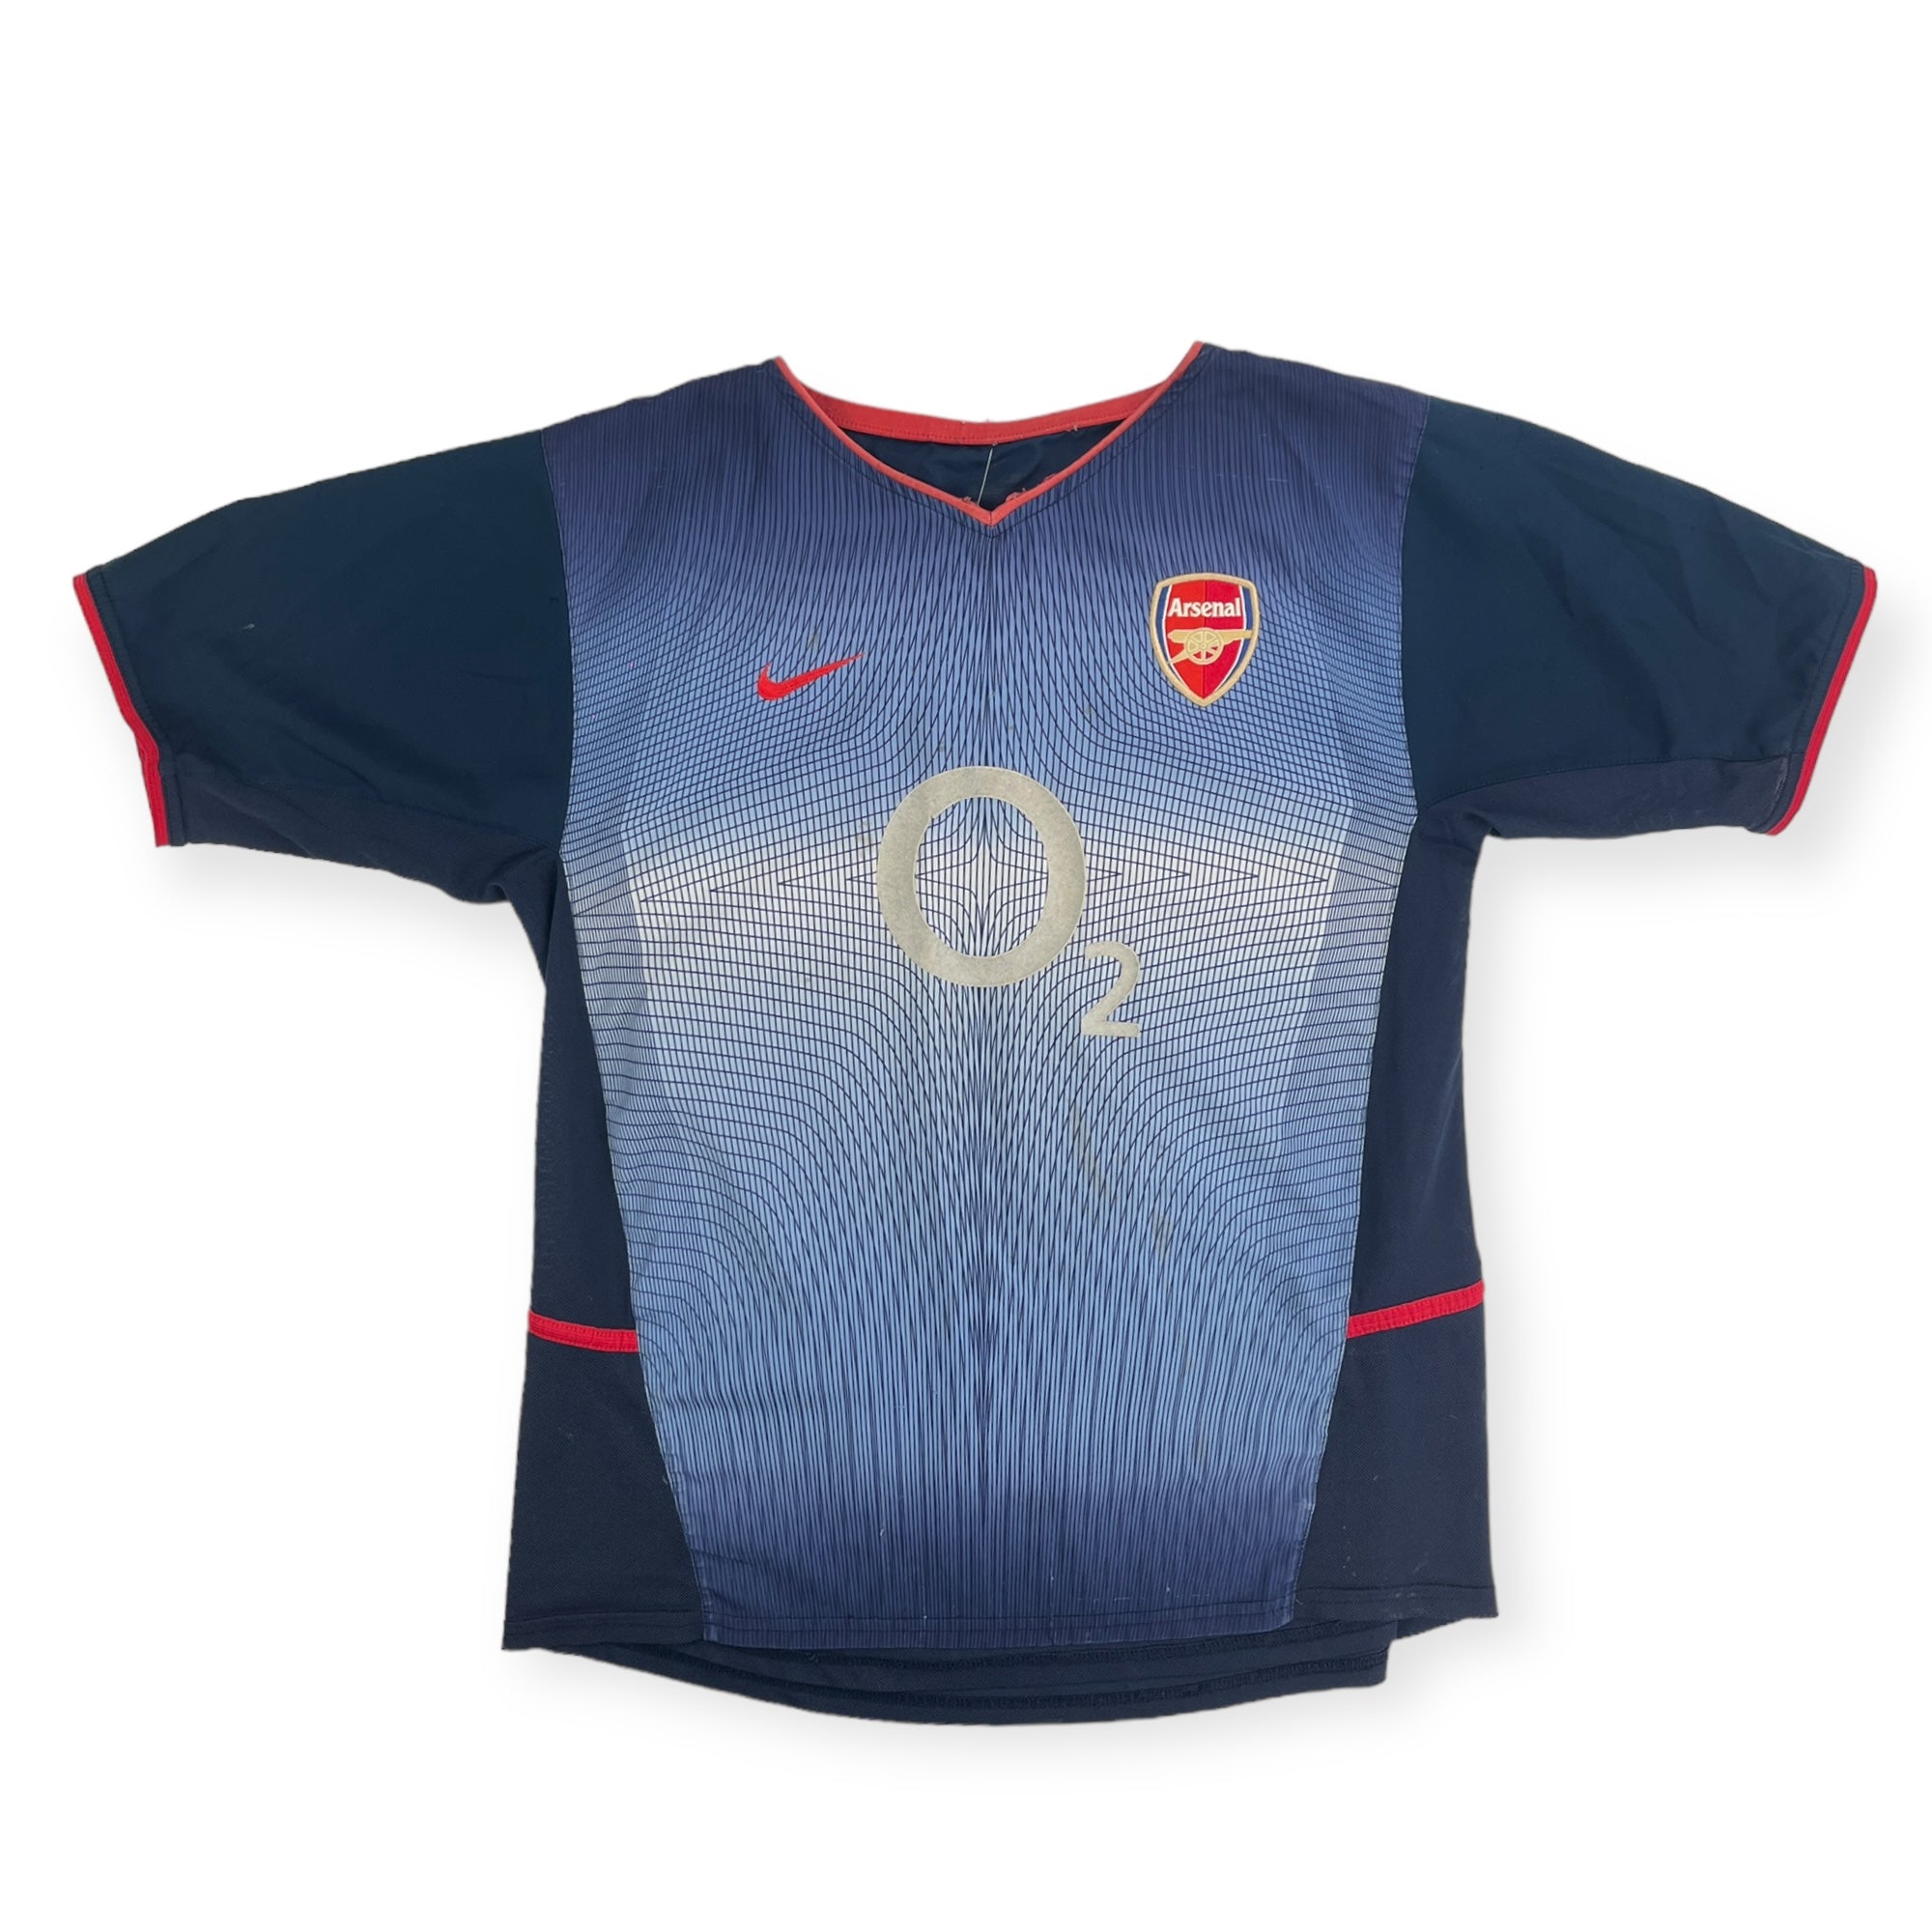 Arsenal 2002 Away Shirt